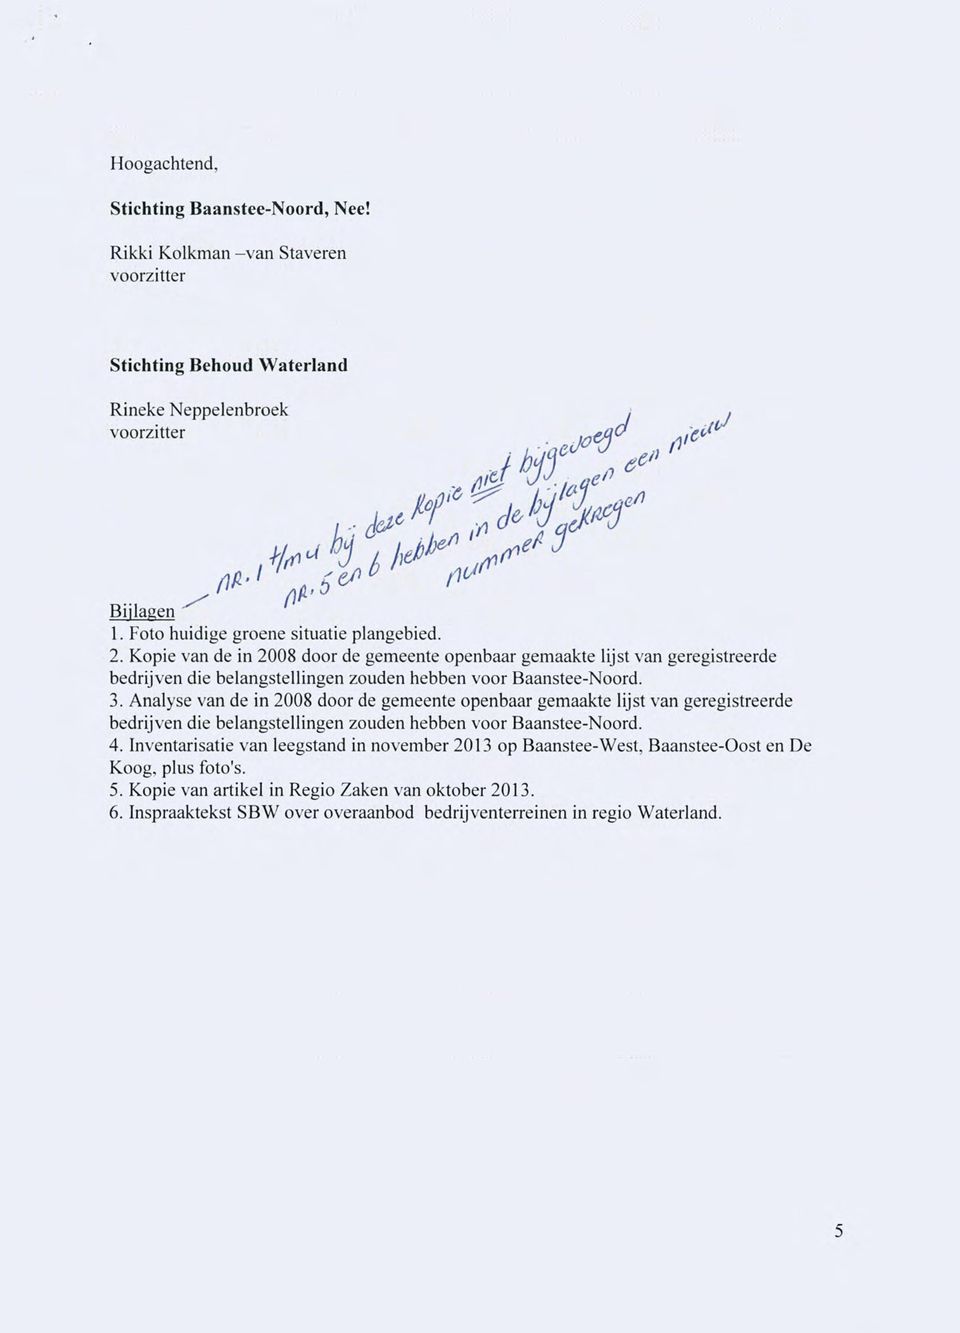 Kopie van de in 2008 door de gemeente openbaar gemaakte lijst van geregistreerde bedrijven die belangstellingen zouden hebben voor Baanstee-Noord. 3.